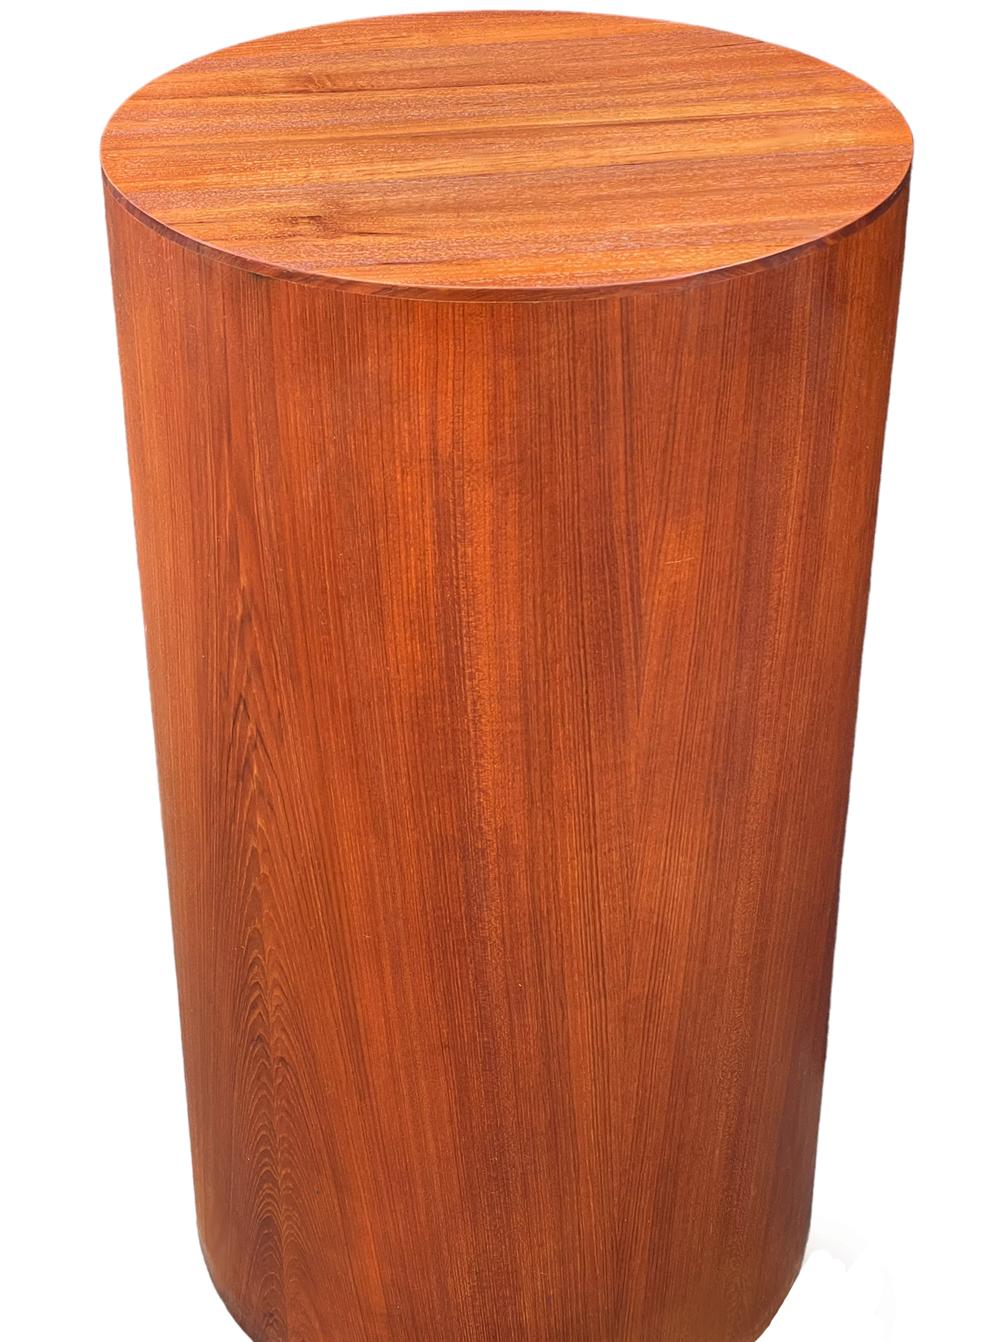 Un guéridon moderne, simple et épuré, provenant du Danemark vers les années 1960. Il est construit en bois de teck grainé. Très belle pièce polyvalente en très bon état. 